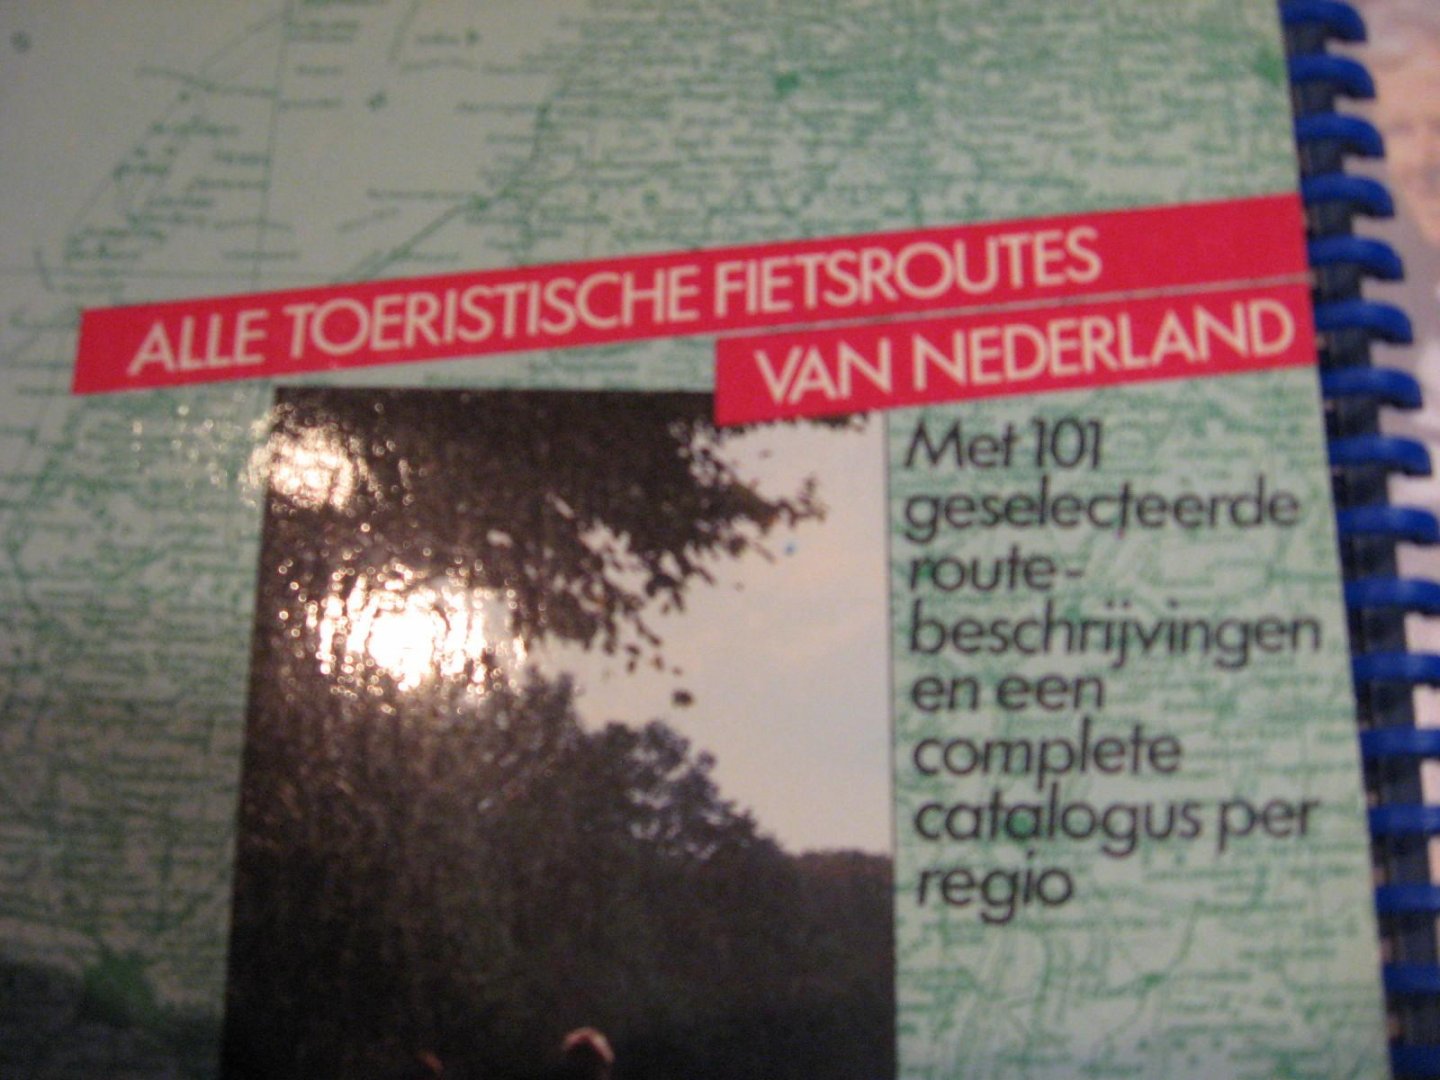 Fietskaart Informatie Stichting - Alle toeristische fietsroutes van Nederland. 101 geselecteerde routebeschrijvingen en een complete catalogus per regio